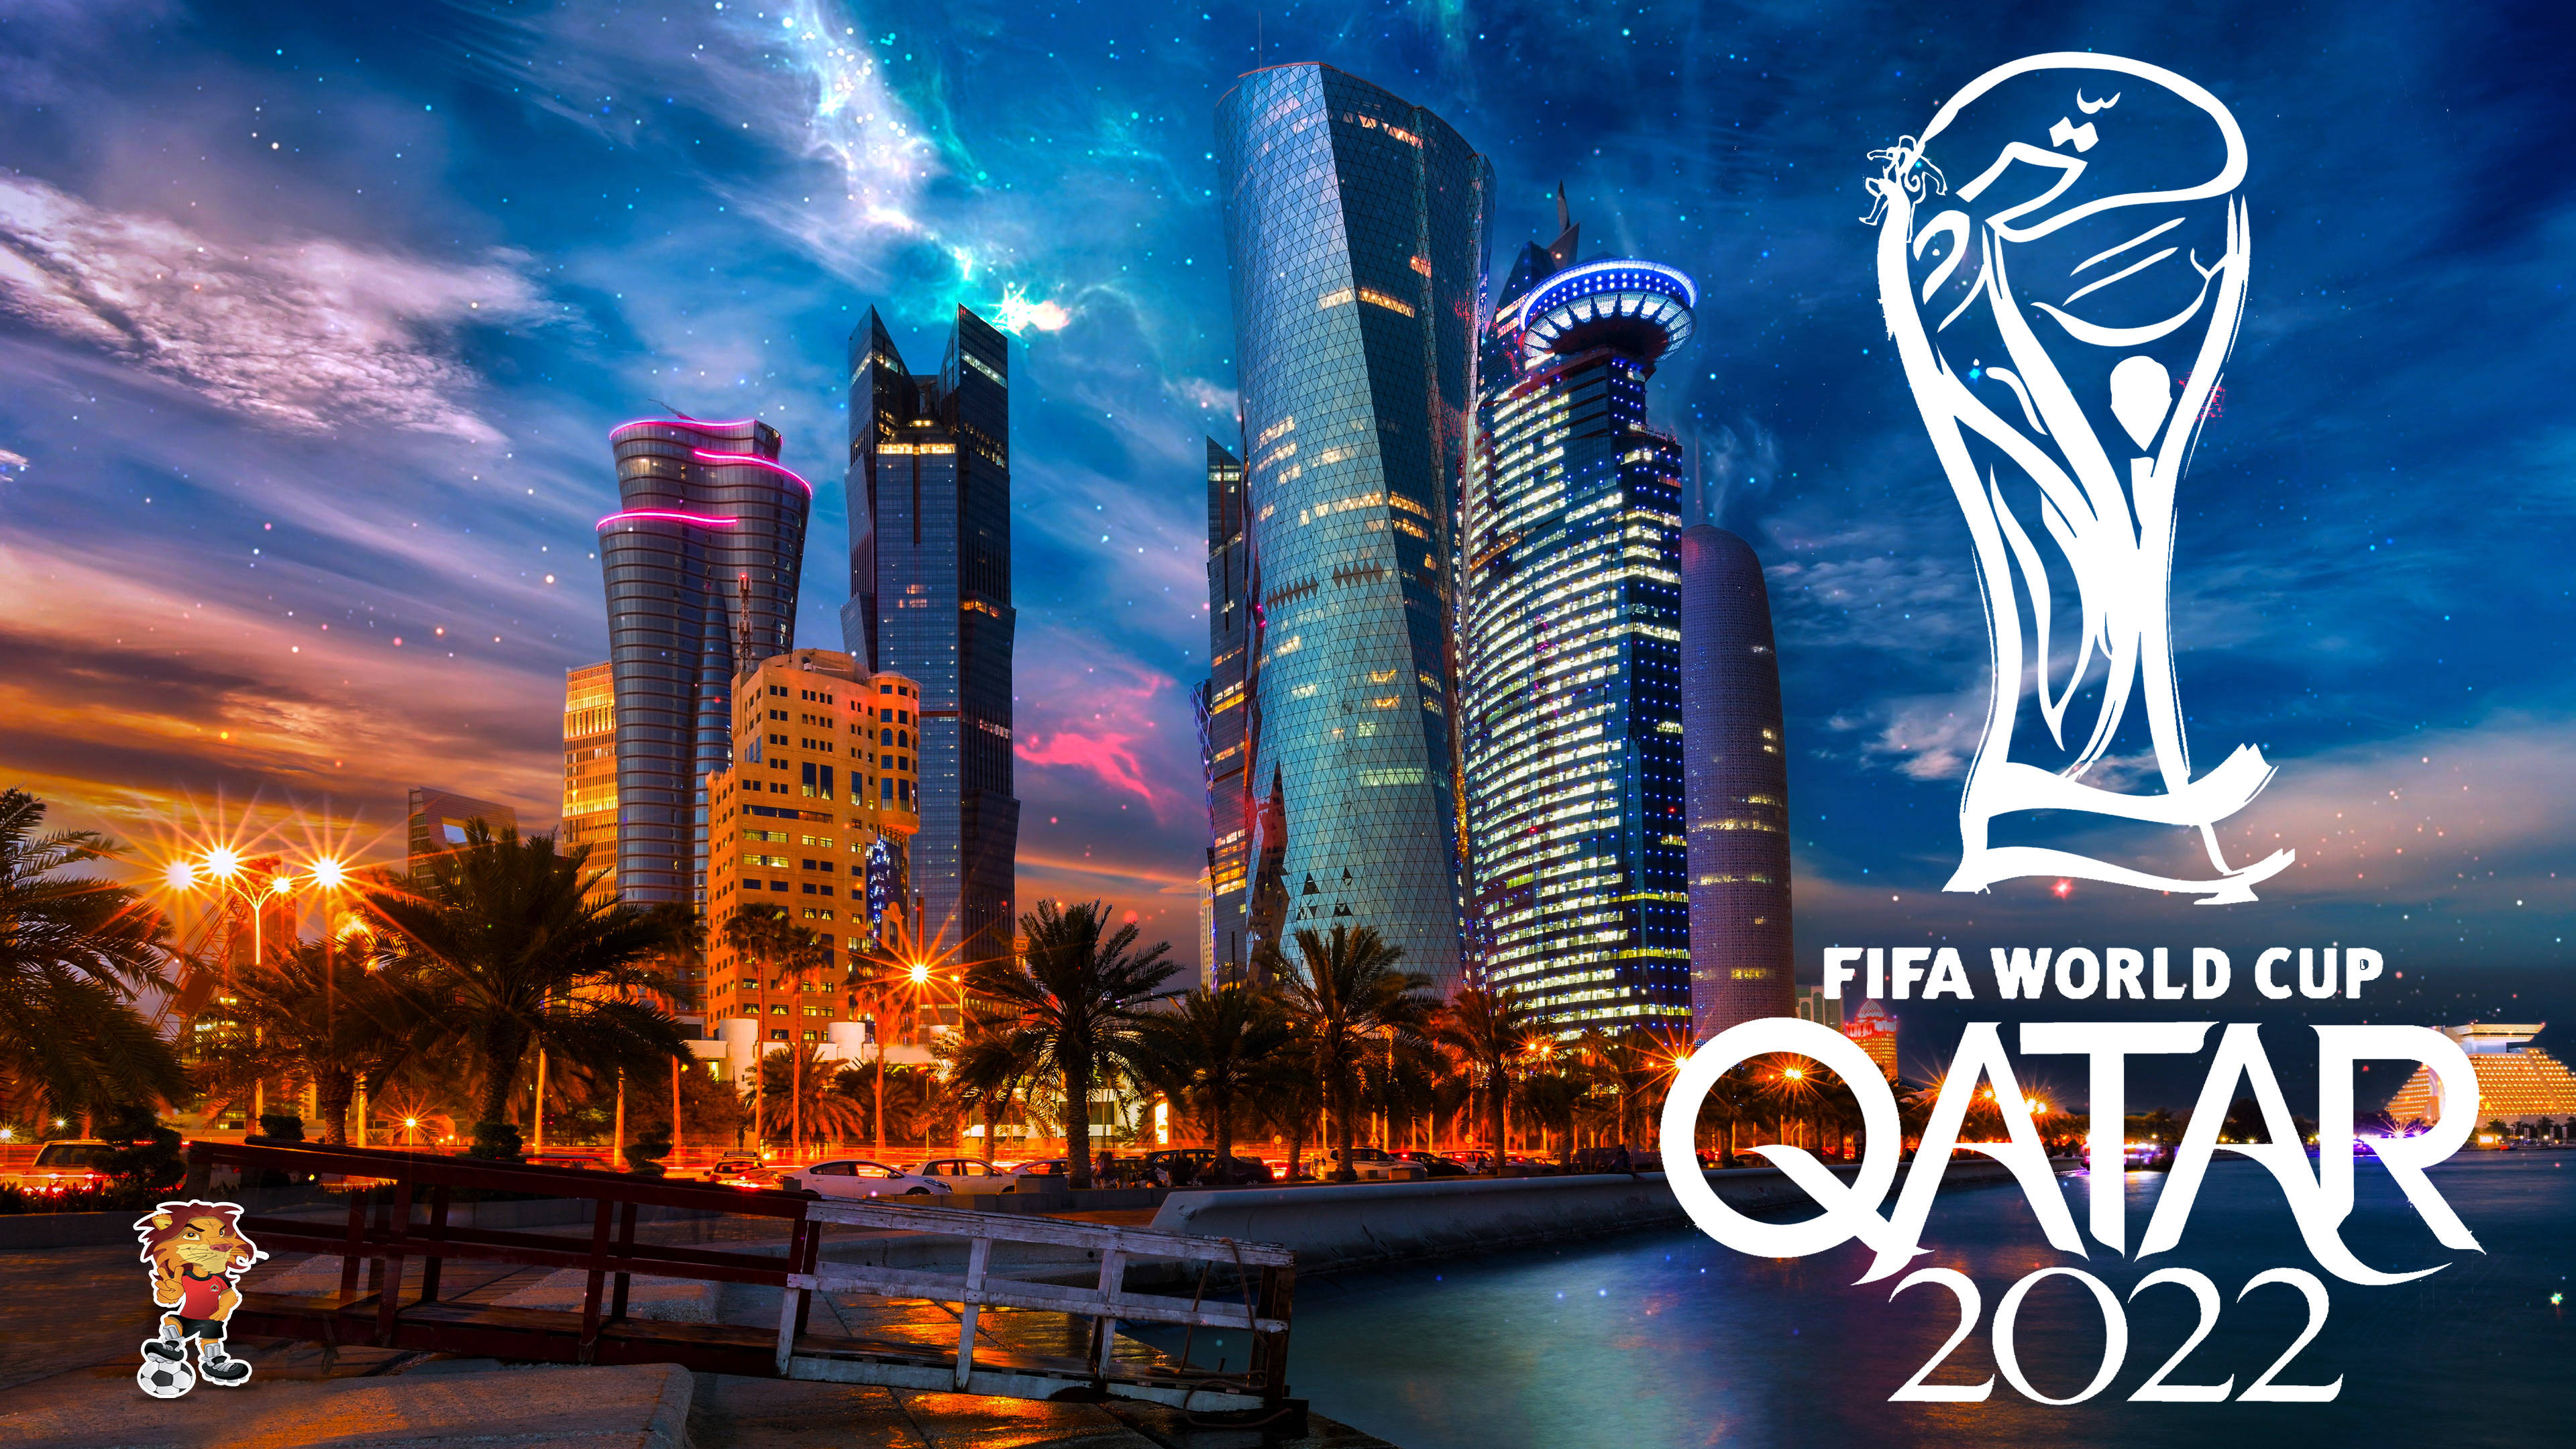 Với ảnh nền HD FIFA World Cup 2022 Qatar Cityscape, bạn sẽ được chiêm ngưỡng vẻ đẹp độc đáo của thành phố, những tòa nhà cao tầng đầy ấn tượng cùng không khí sôi động của bóng đá. Với chất lượng hình ảnh cực cao, bạn sẽ không thể nào rời mắt khỏi màn hình máy tính của mình.